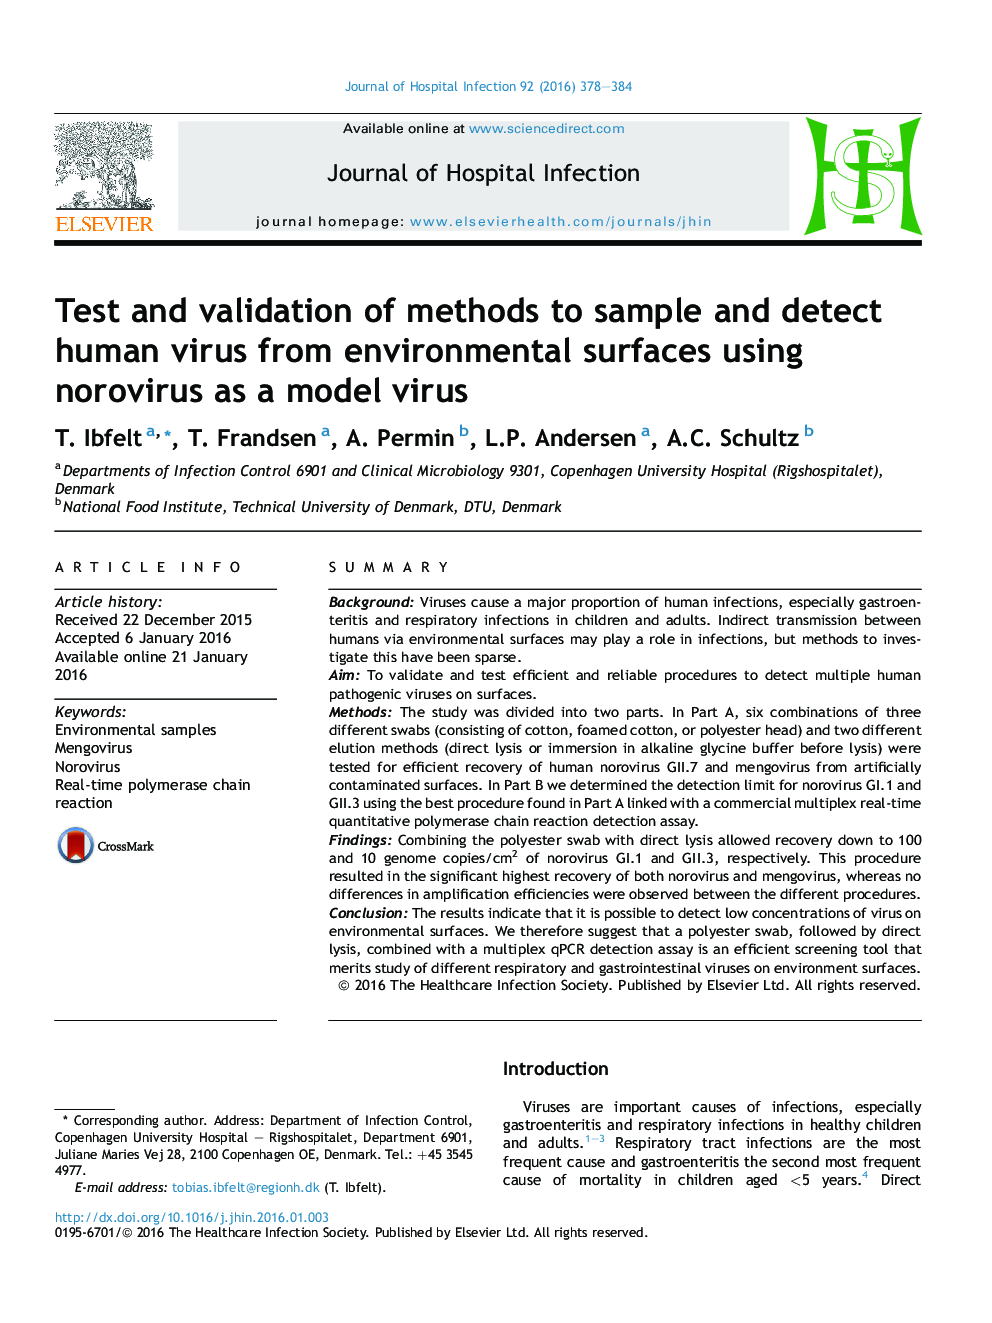 تست و اعتبار سنجی روش های نمونه برداری و شناسایی ویروس انسانی از سطوح زیست محیطی با استفاده از نوروویروس به عنوان یک ویروس نمونه 